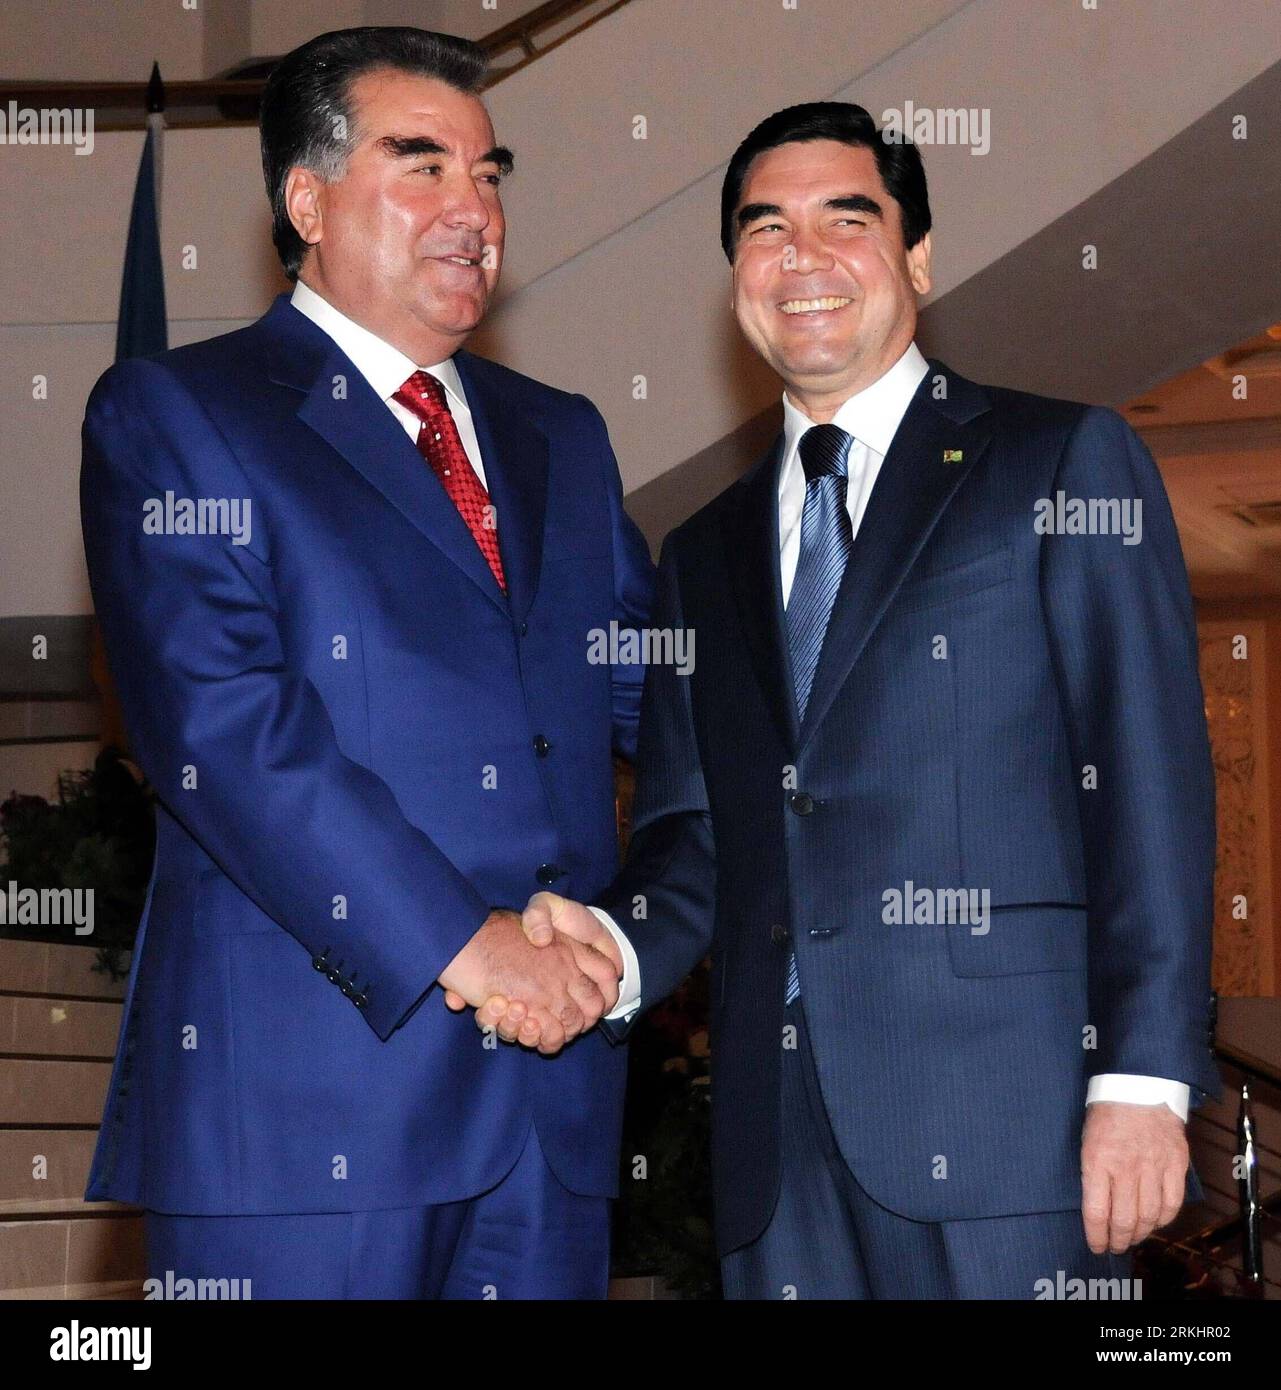 Bildnummer: 55890886 Datum: 03.09.2011 Copyright: imago/Xinhua (110903) -- DUSHANBE, 3 settembre 2011 (Xinhua) -- il presidente tagiko Imomali Rakhmon (L) stringe la mano al presidente turkmeno Gurbanguly Kurbanguly Berdymukhamedov nella capitale tagik Dushanbe il 3 settembre 2011. I leader della Comunità degli Stati indipendenti (CSI) hanno iniziato i loro colloqui al vertice sabato nella capitale tagika di Dushanbe, in occasione del ventesimo anniversario del gruppo. Si prevede che i partecipanti esaminino la CSI negli ultimi 20 anni e disegnino un progetto per il suo sviluppo futuro. (Xinhua/Sadat) (nxl) VERTICE TAGIKISTAN-DUSHANBE-CIS Foto Stock